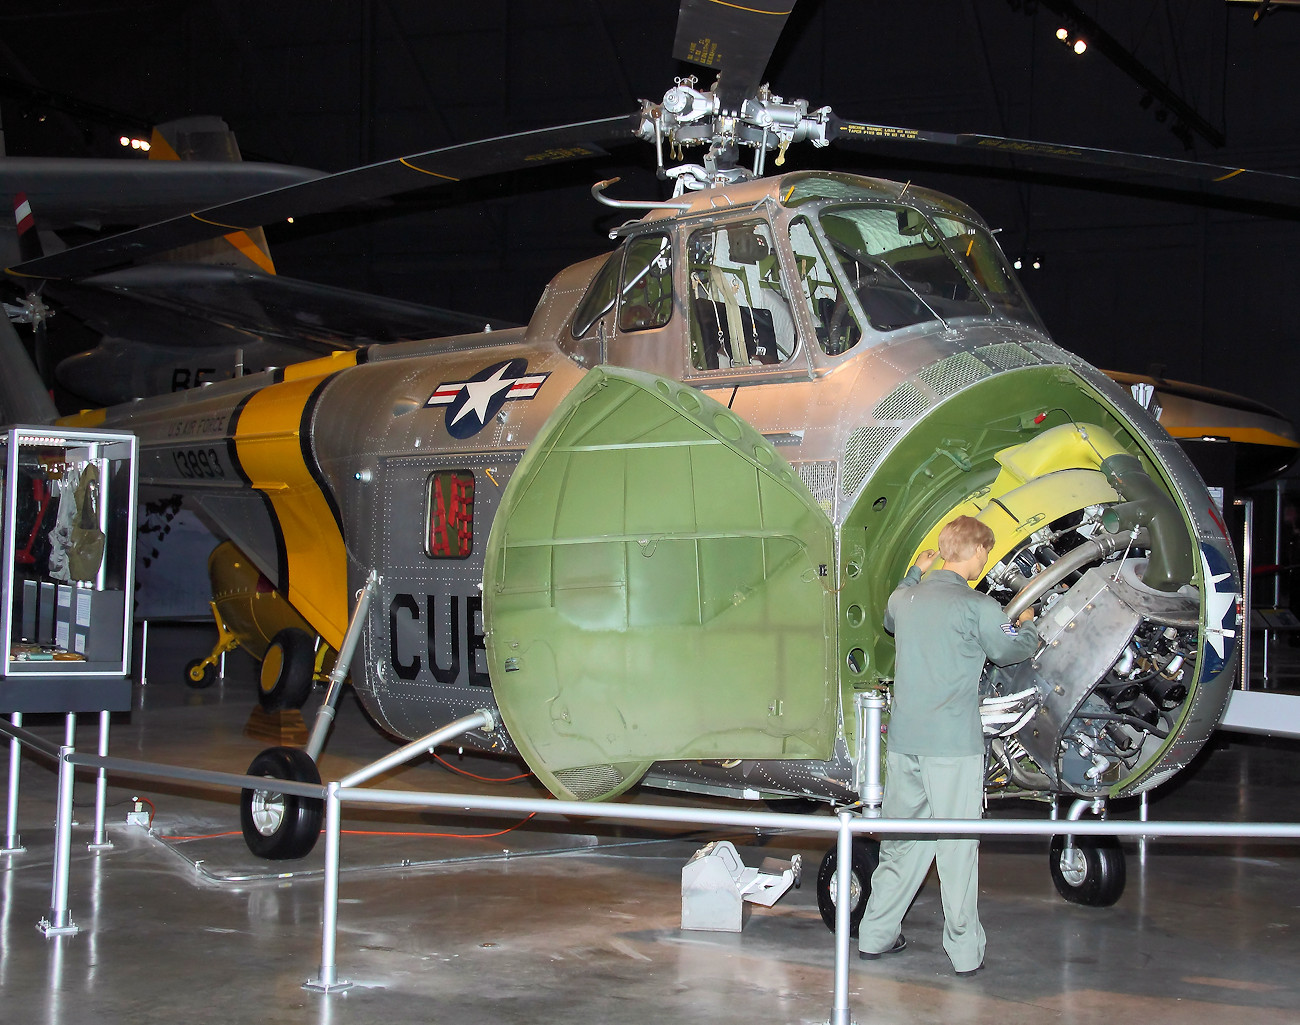 Sikorsky UH-19B Chickasaw - Version der Sikorsky S-55 für die U.S. Air Force der 1950er und 1960er Jahre